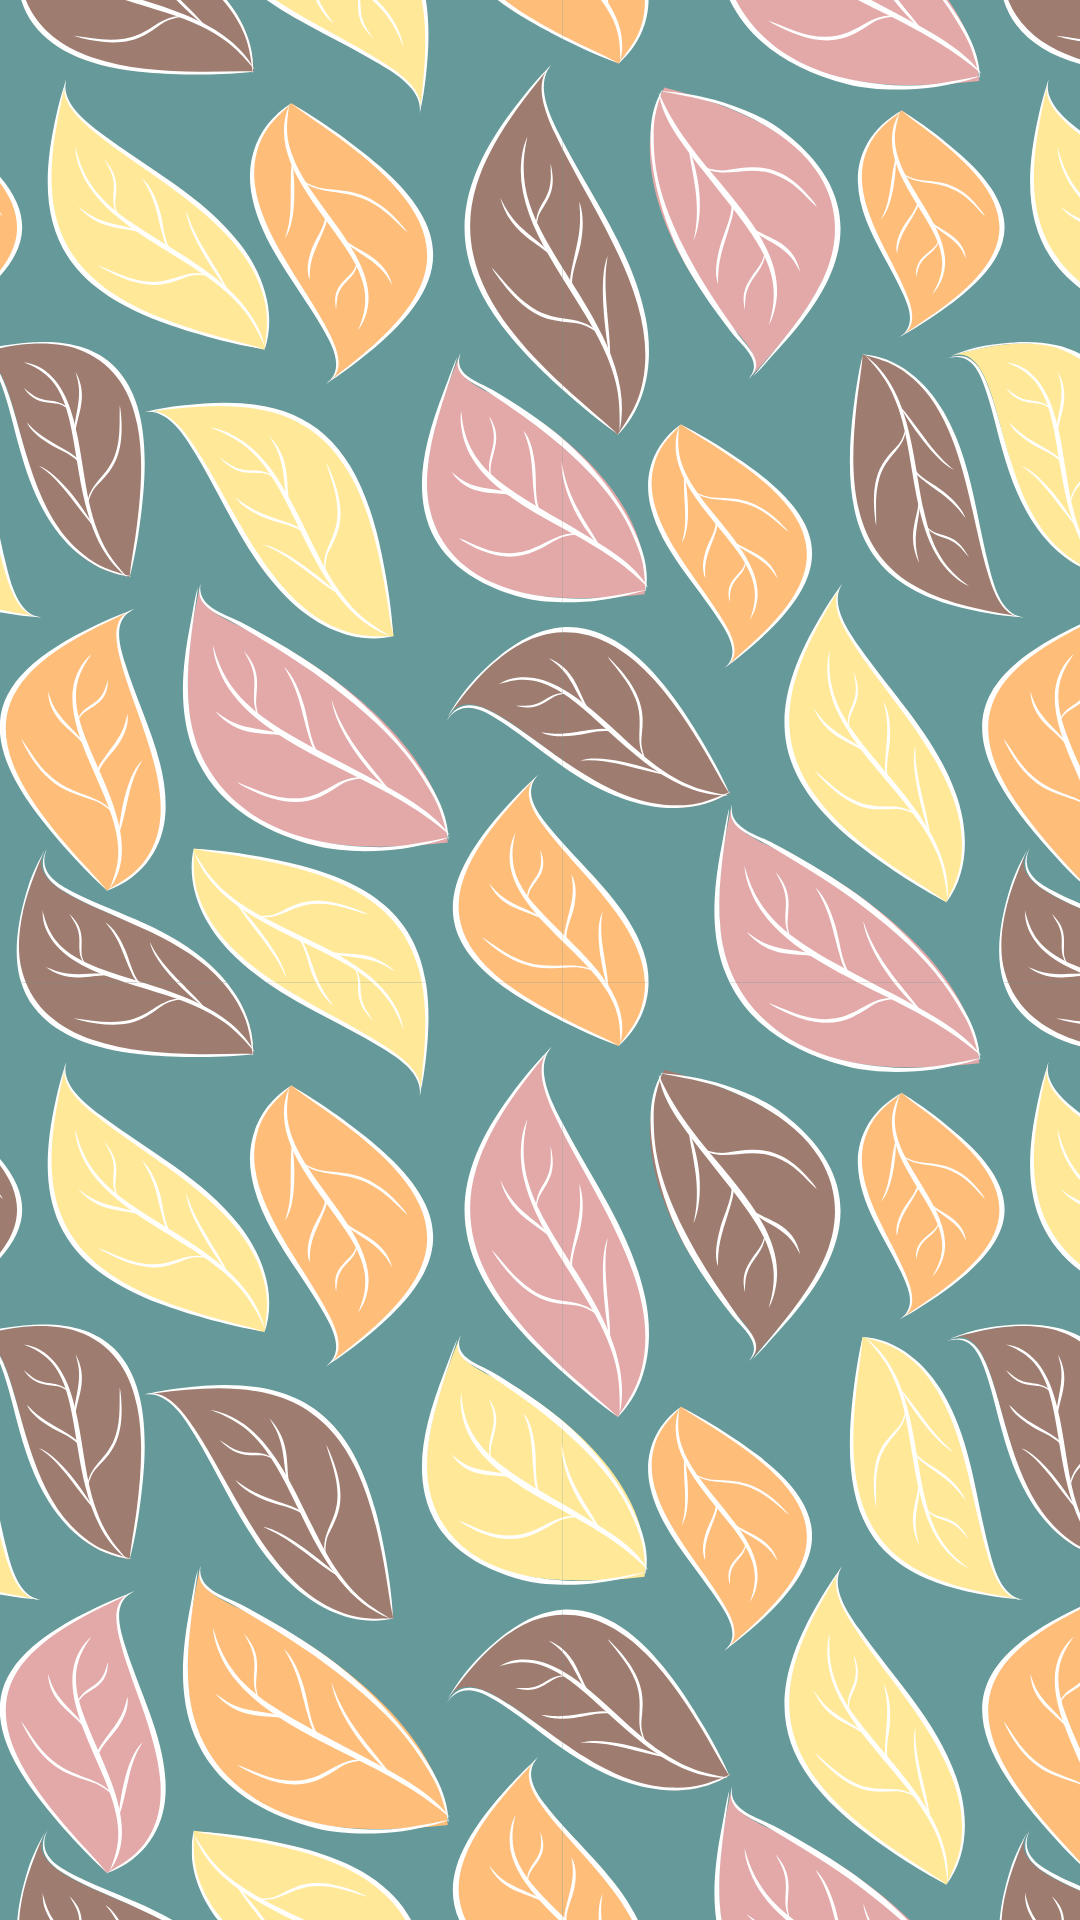 Beautiful Fall Wallpaper Download. Just Jes Lyn. Fall wallpaper, Cute fall wallpaper, iPhone wallpaper fall